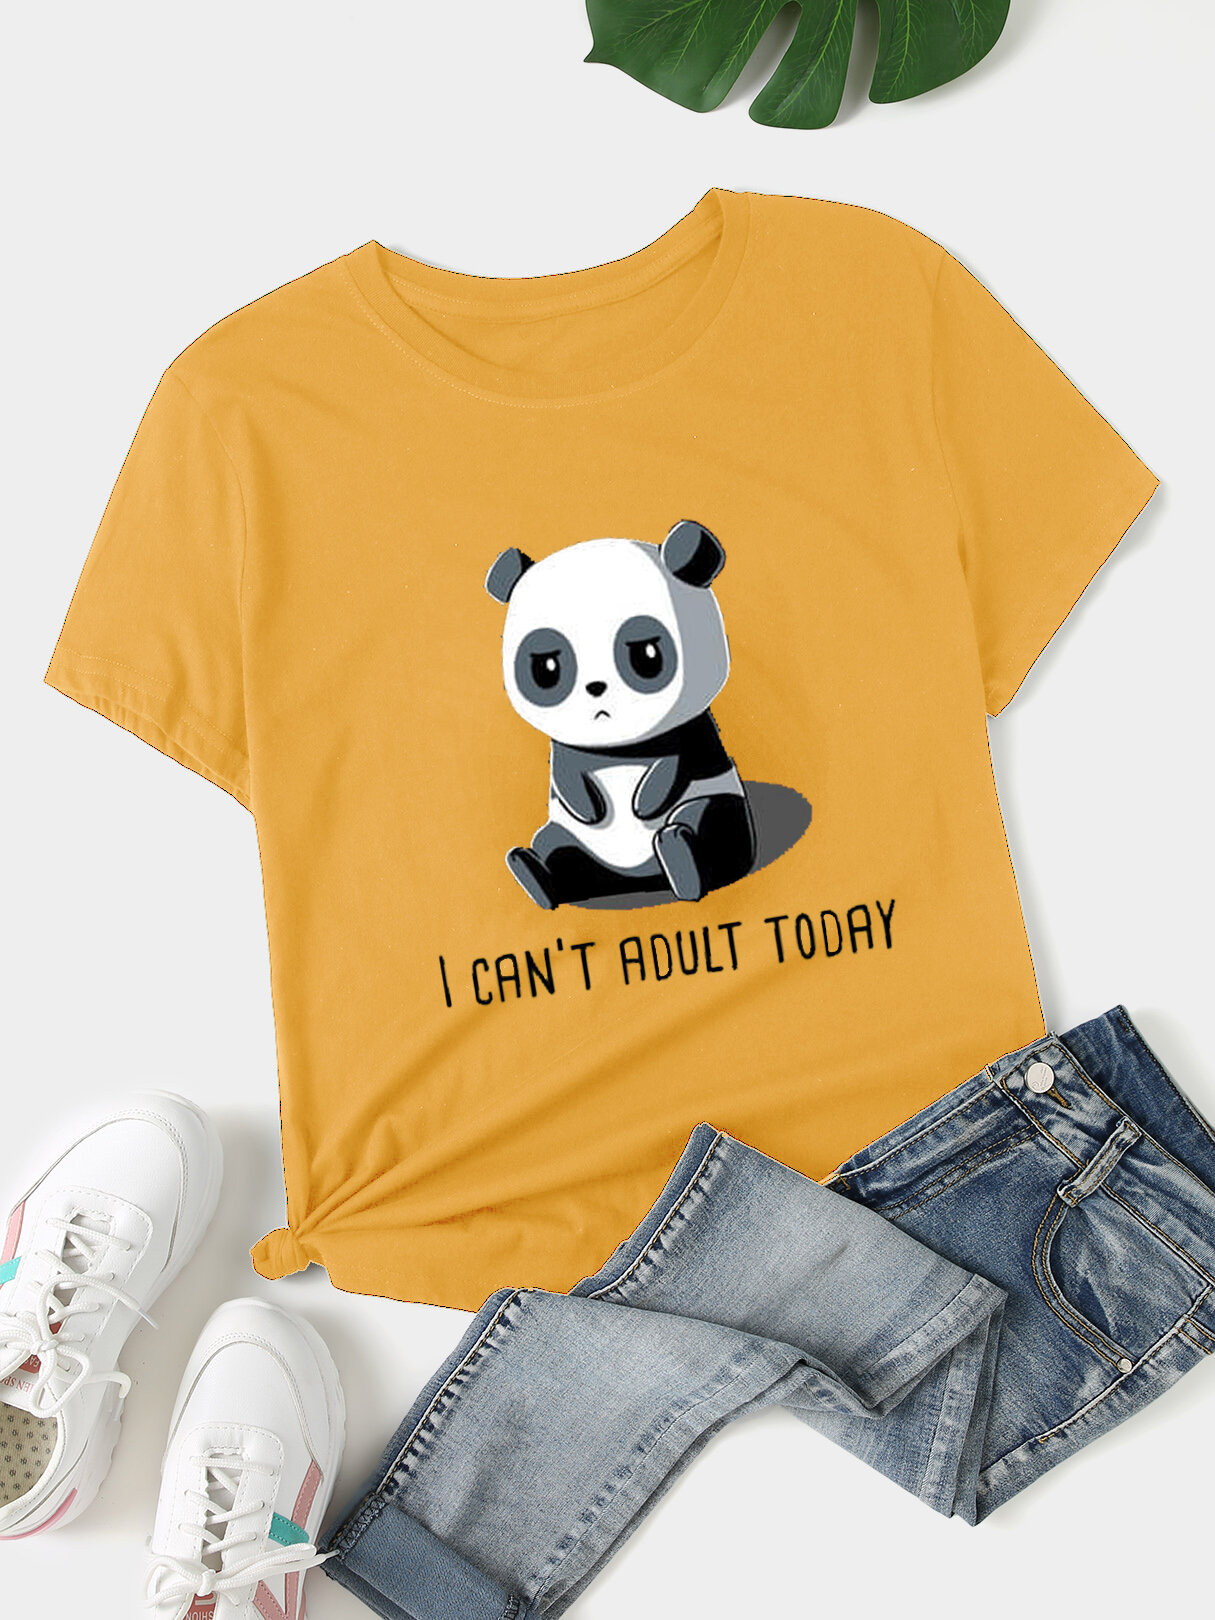 Plus Size Crew Collo Panda T-shirt manica corta